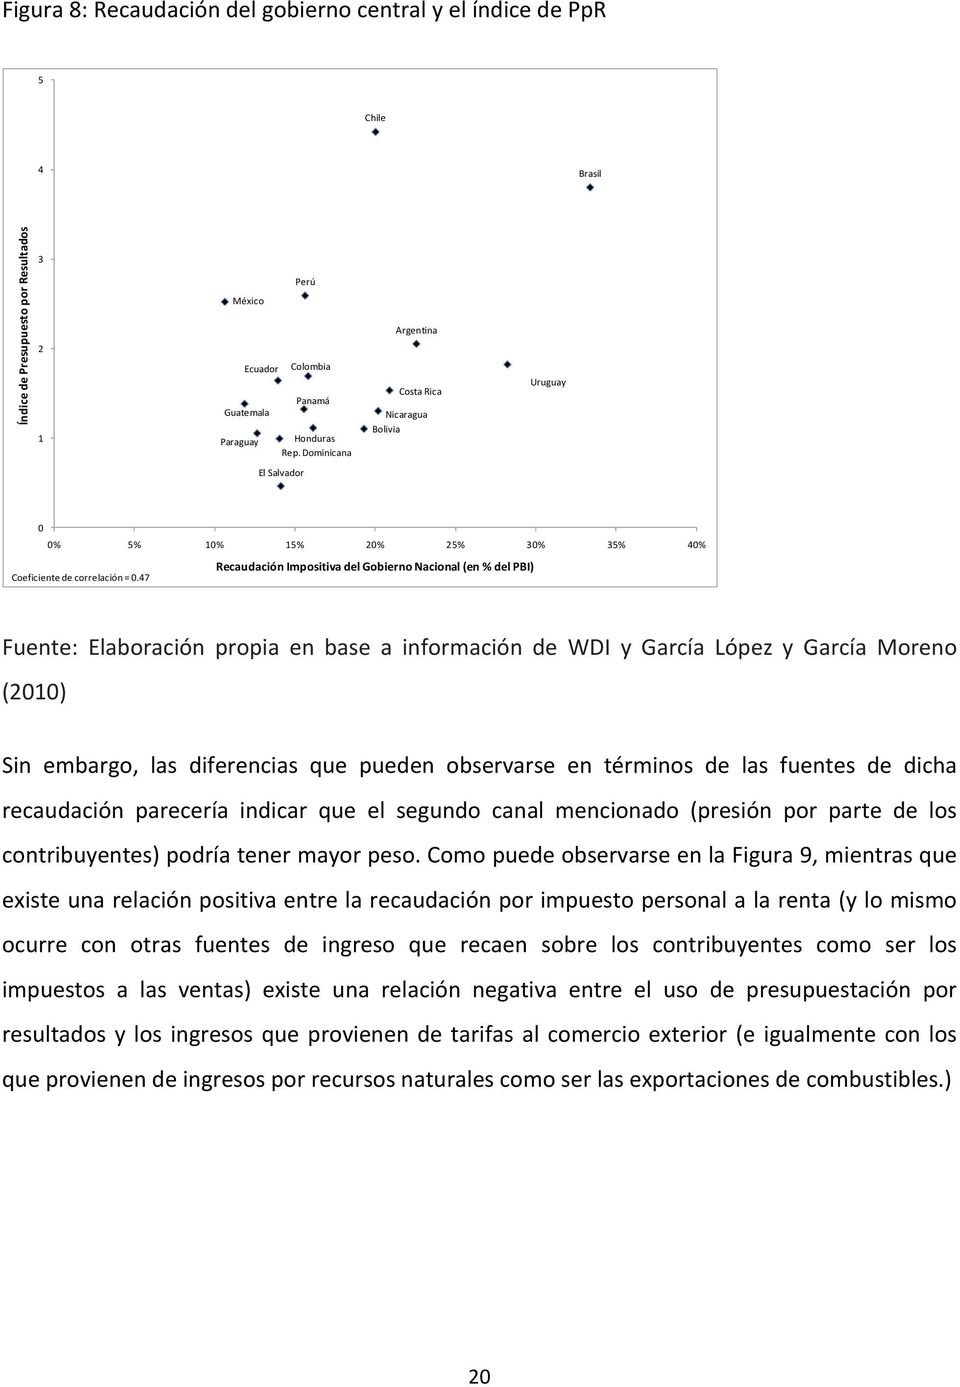 47 Fuente: Elaboración propia en base a información de WDI y García López y García Moreno (2010) Sin embargo, las diferencias que pueden observarse en términos de las fuentes de dicha recaudación